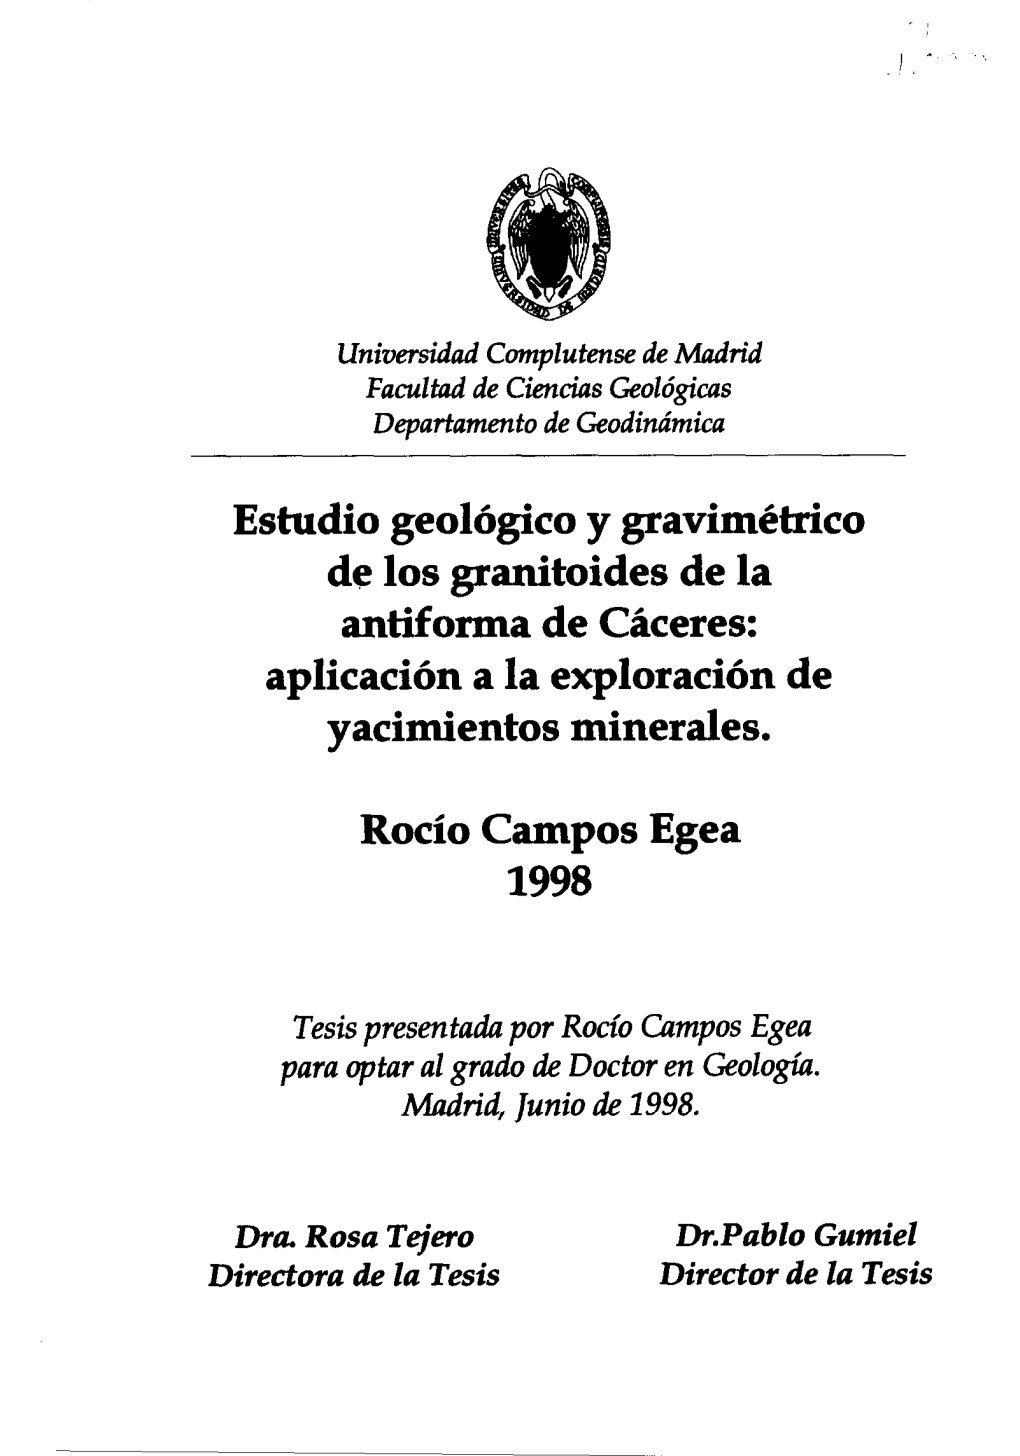 Estudio Geológico Y Gravimétrico De Los Granitoides De La Antiforma De Cáceres: Aplicación a La Exploración De Yacimientos Minerales